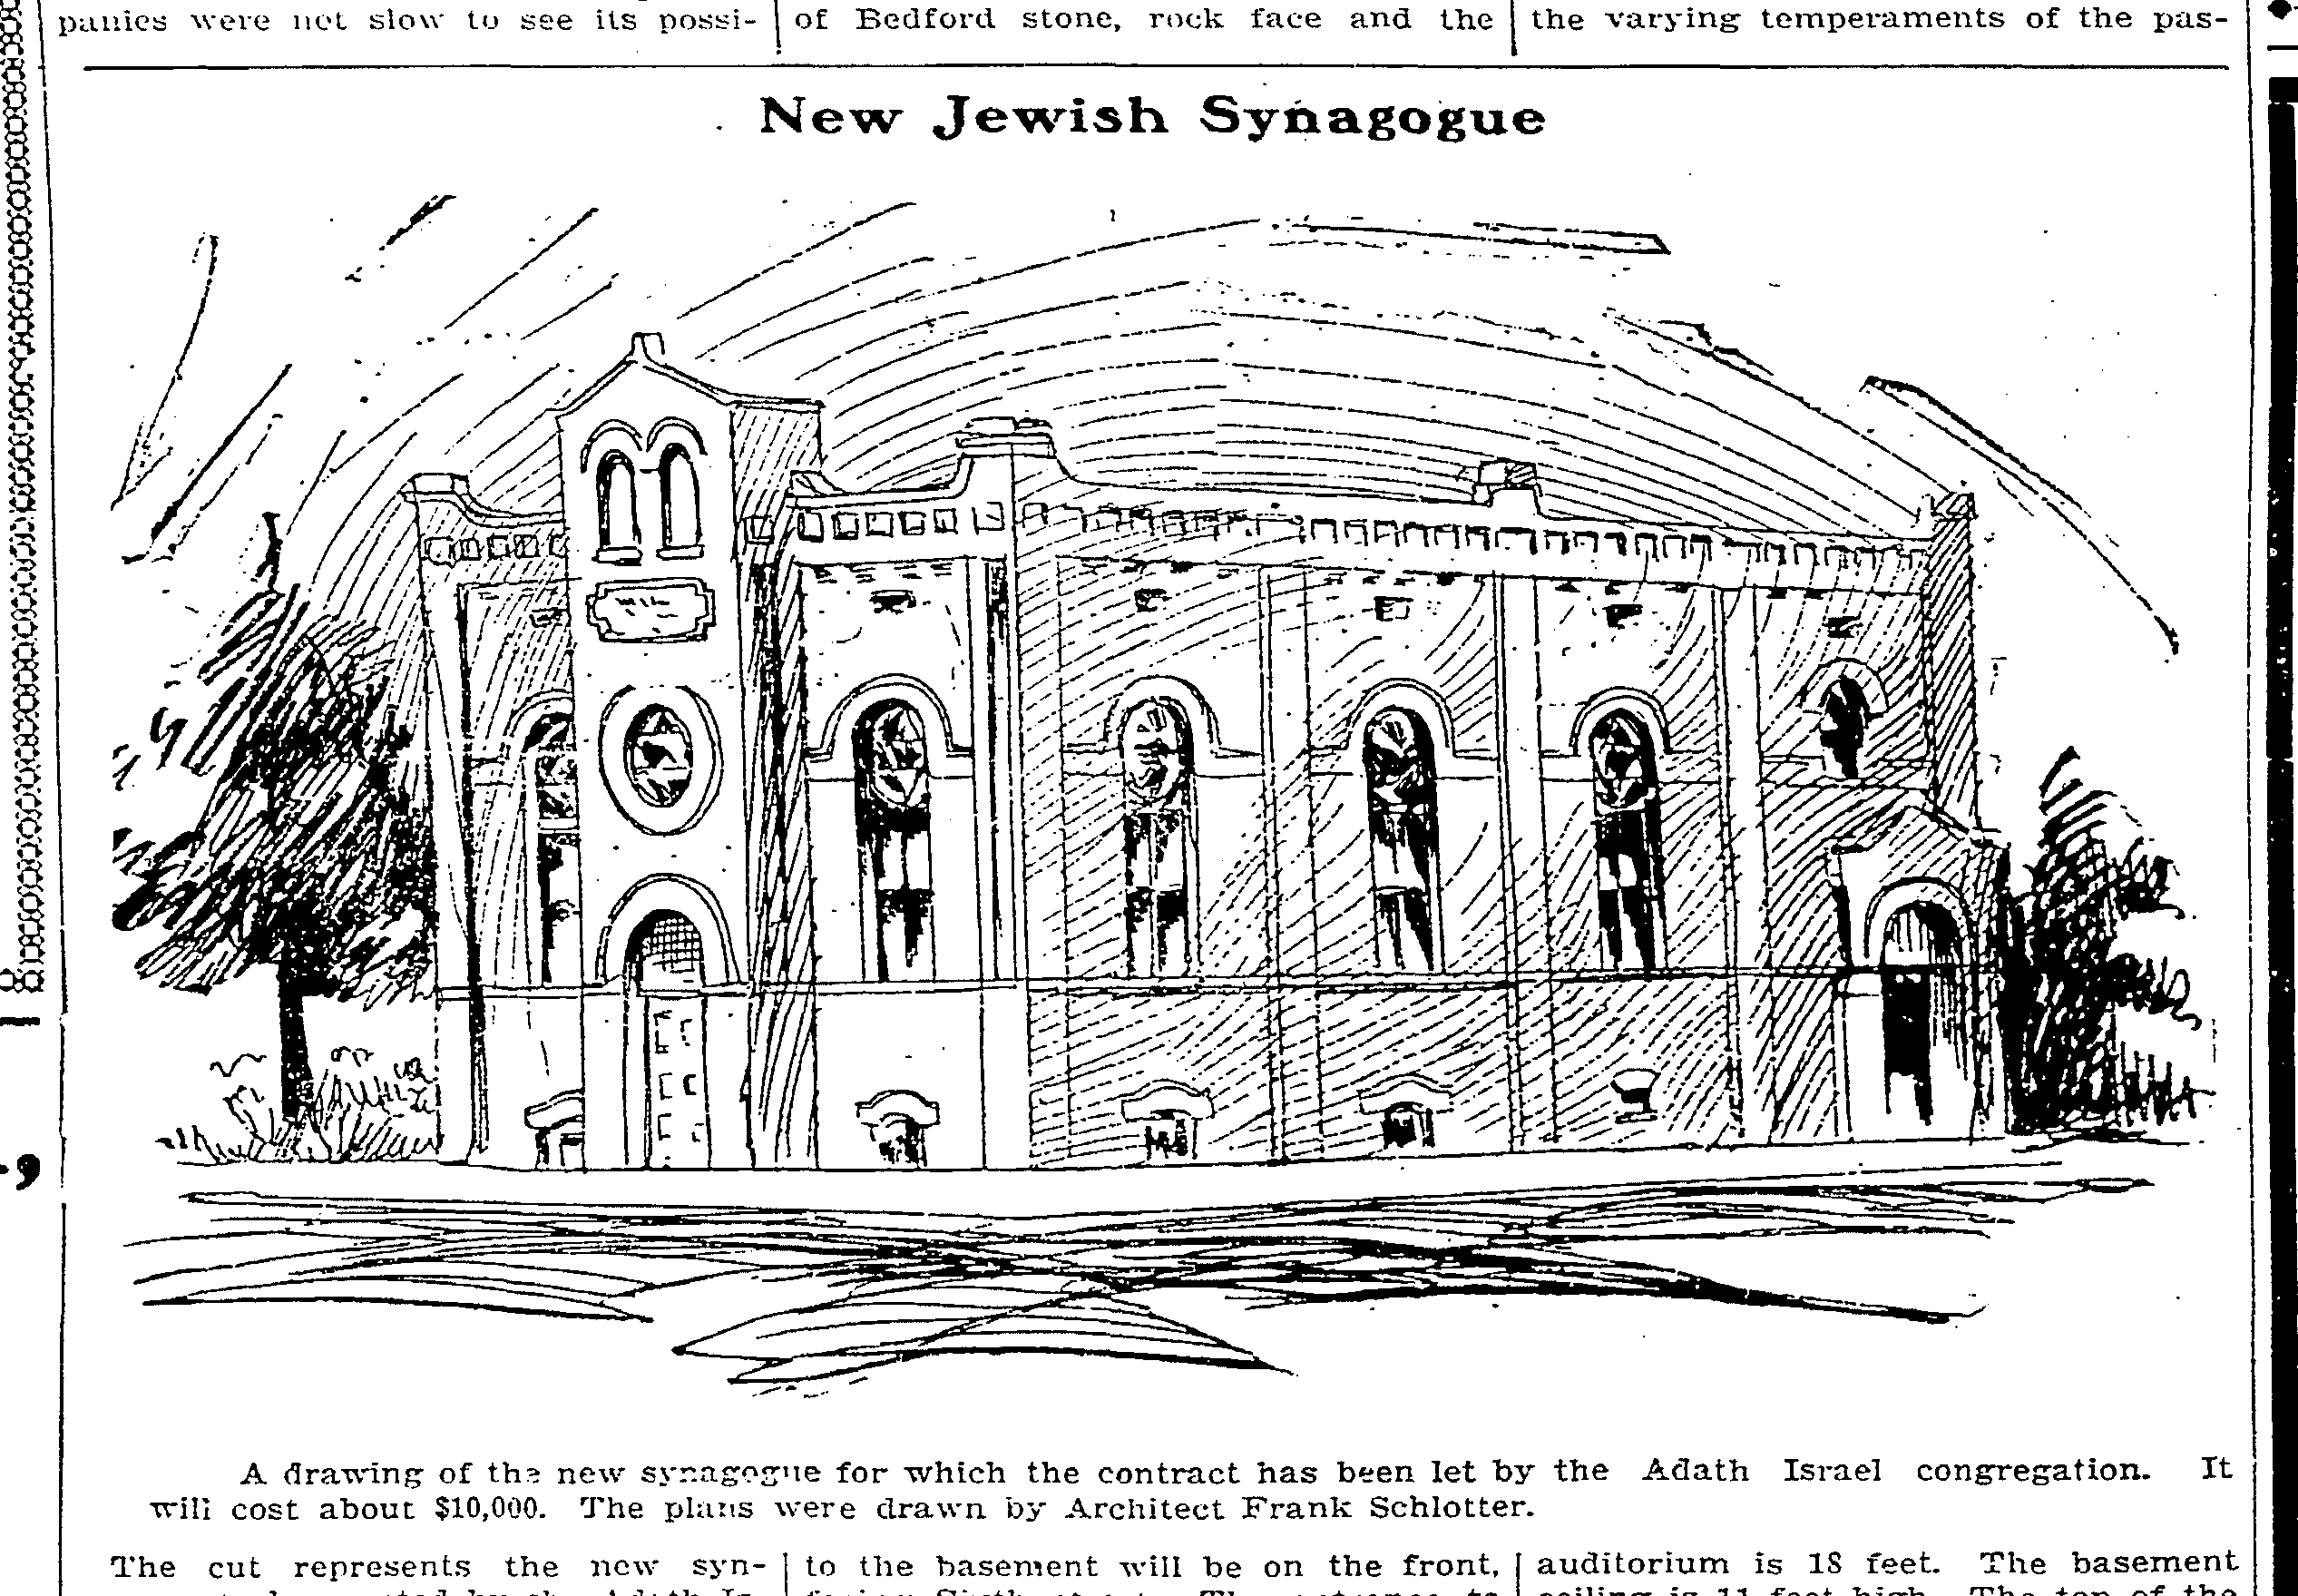 Adath Israel Synagogue